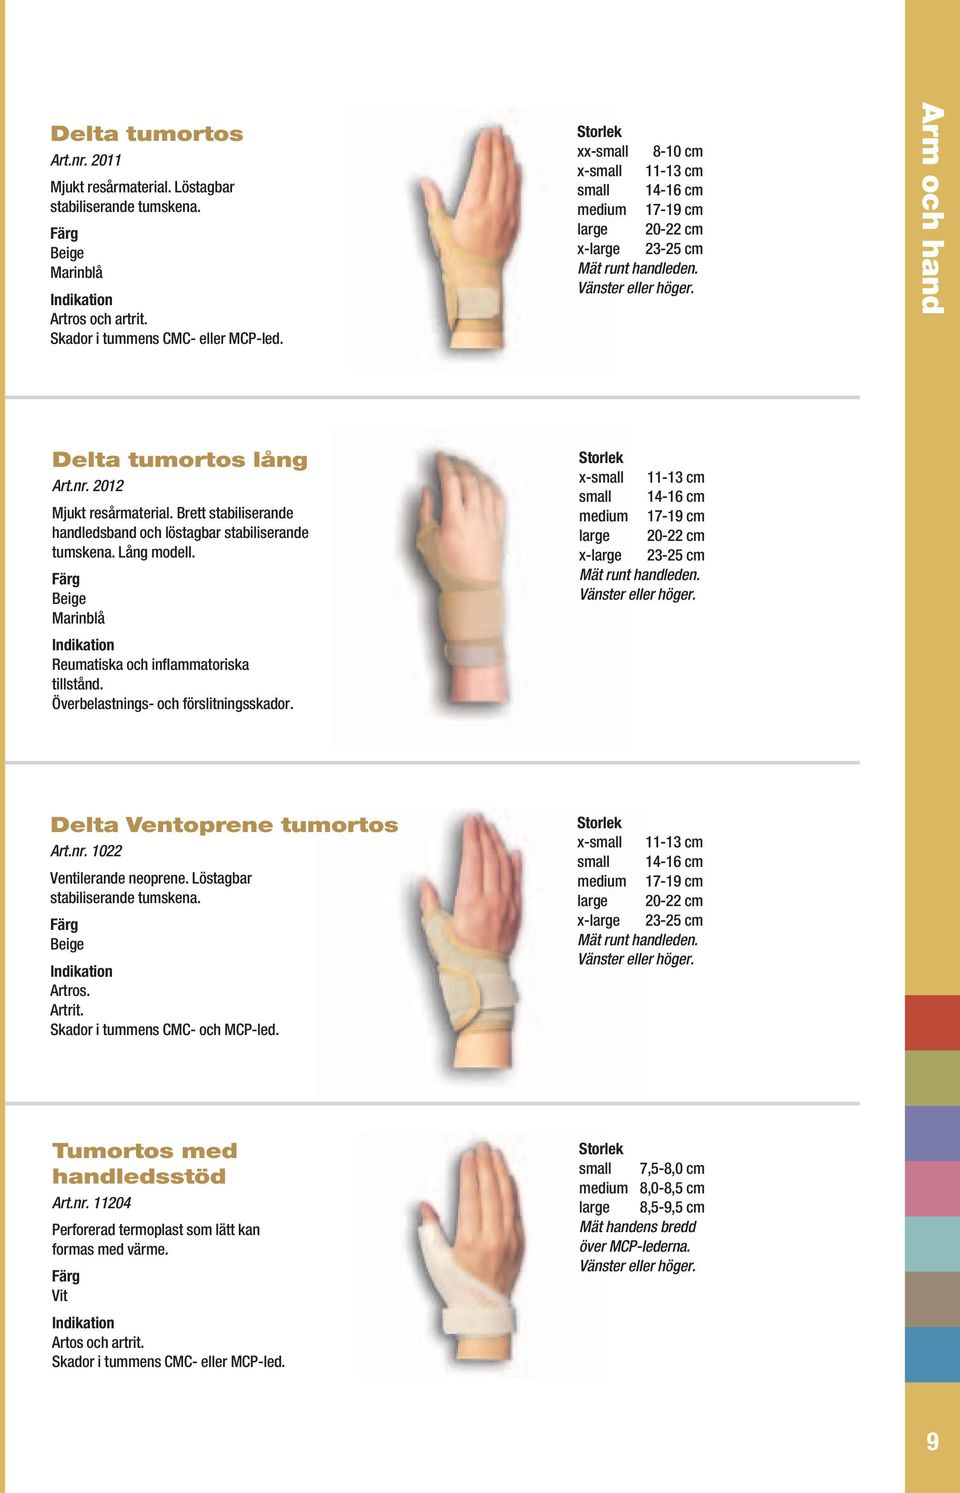 Brett stabiliserande handledsband och löstagbar stabiliserande tumskena. Lång modell. Marinblå Reumatiska och inflammatoriska tillstånd. Överbelastnings- och förslitningsskador.